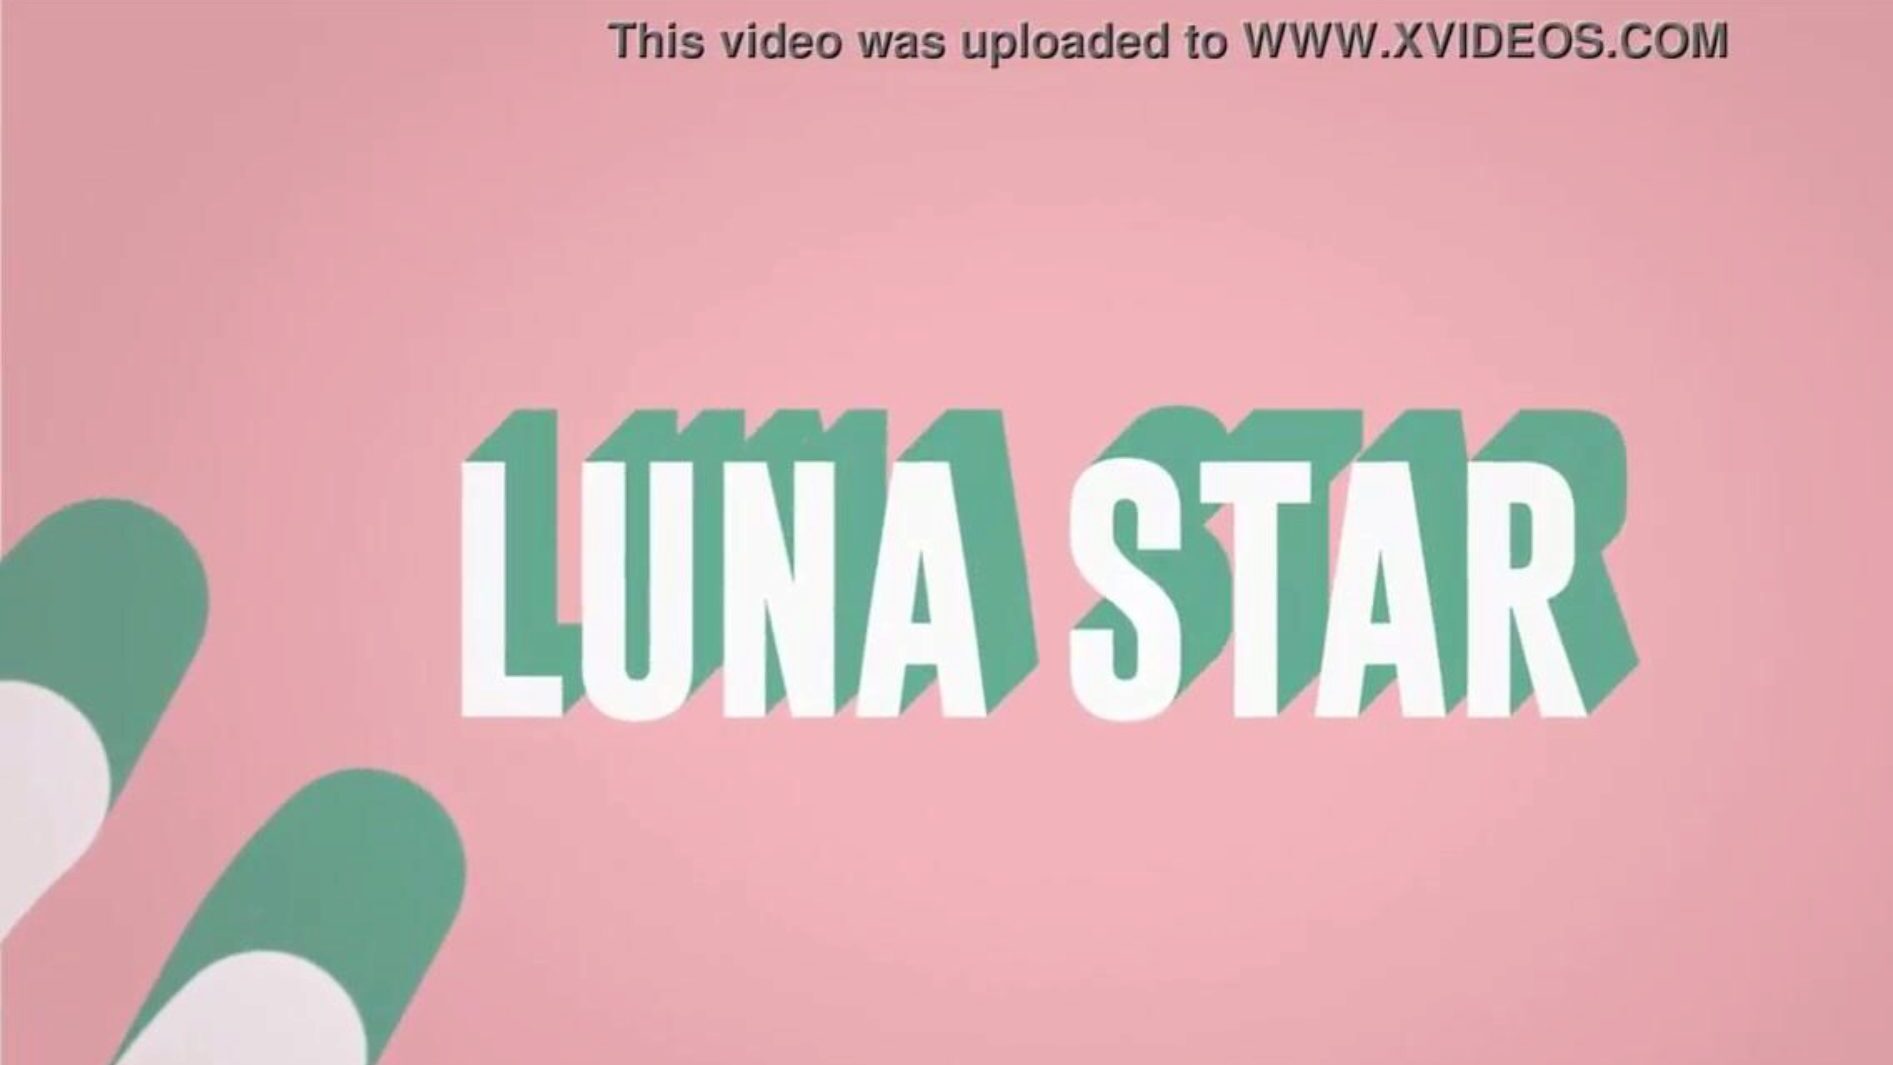 είναι το γαμημένο μου wifi: οι brazzers παίζουν με το luna star. δείτε πλήρη στο www.zzfull.com/luna